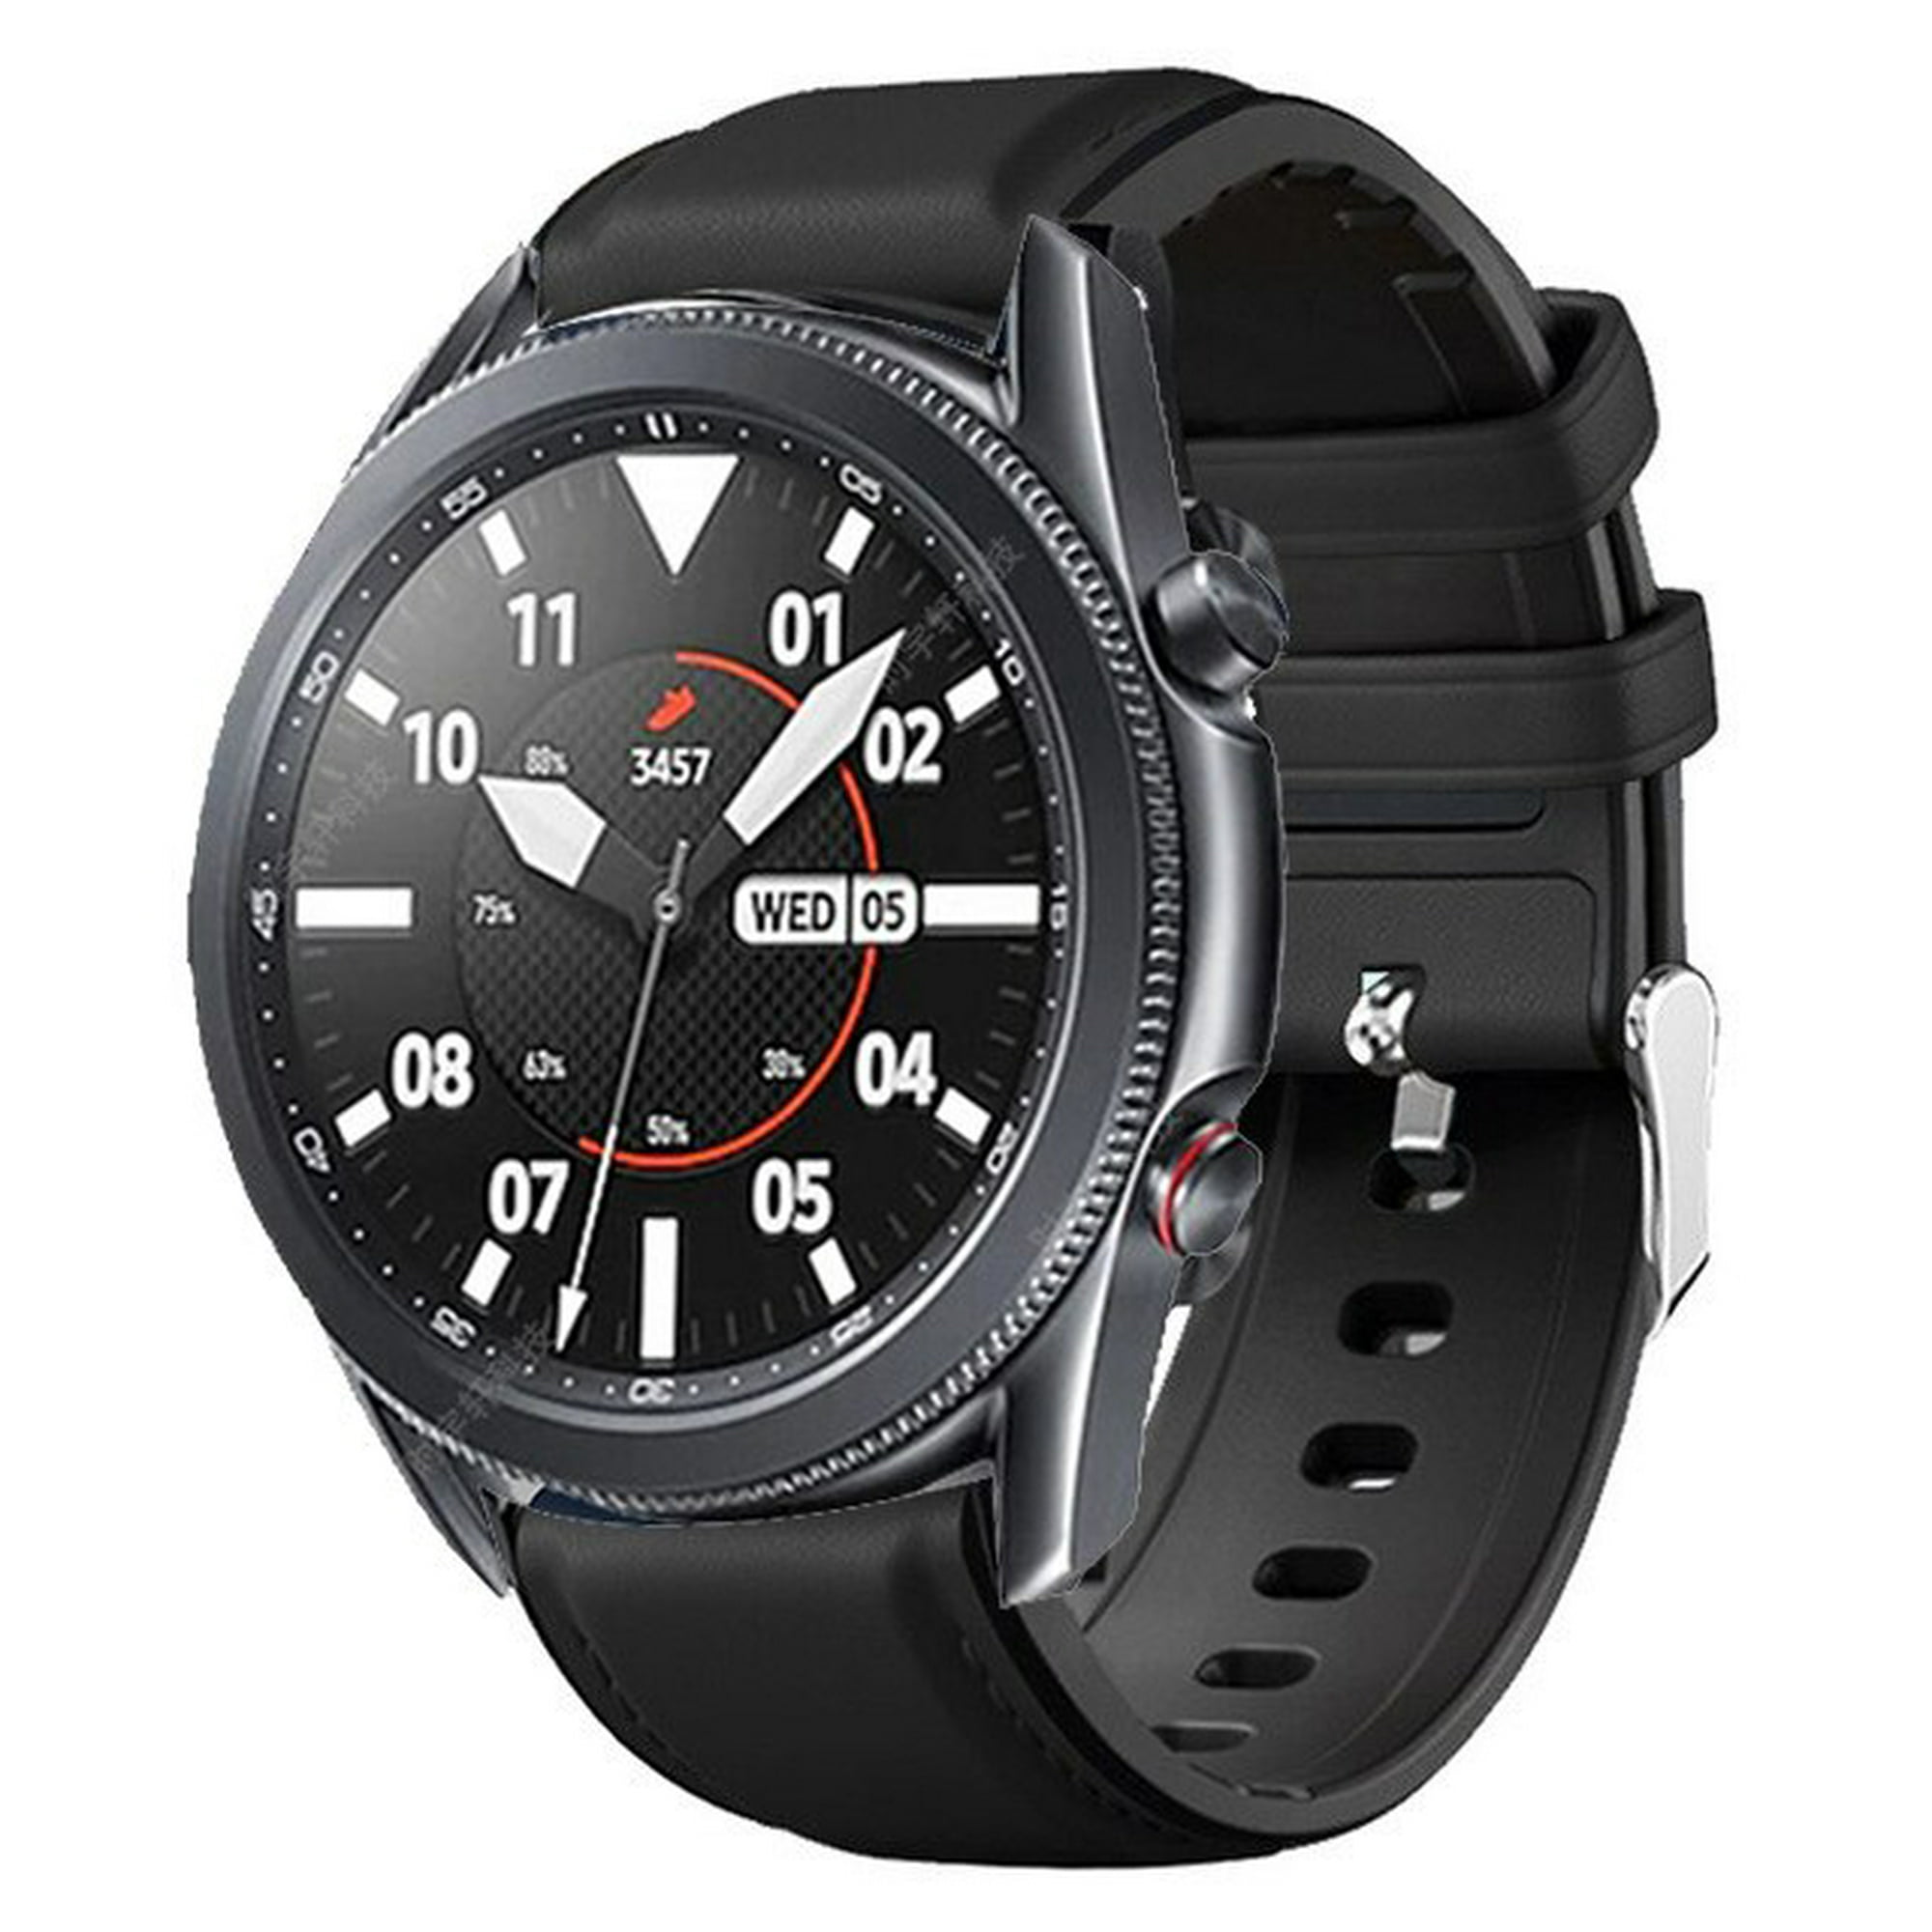  Paquete de Amazfit GTR 3 Pro Smart Watch negro + correas de  reloj Amazfit de cuero genuino color negro : Celulares y Accesorios